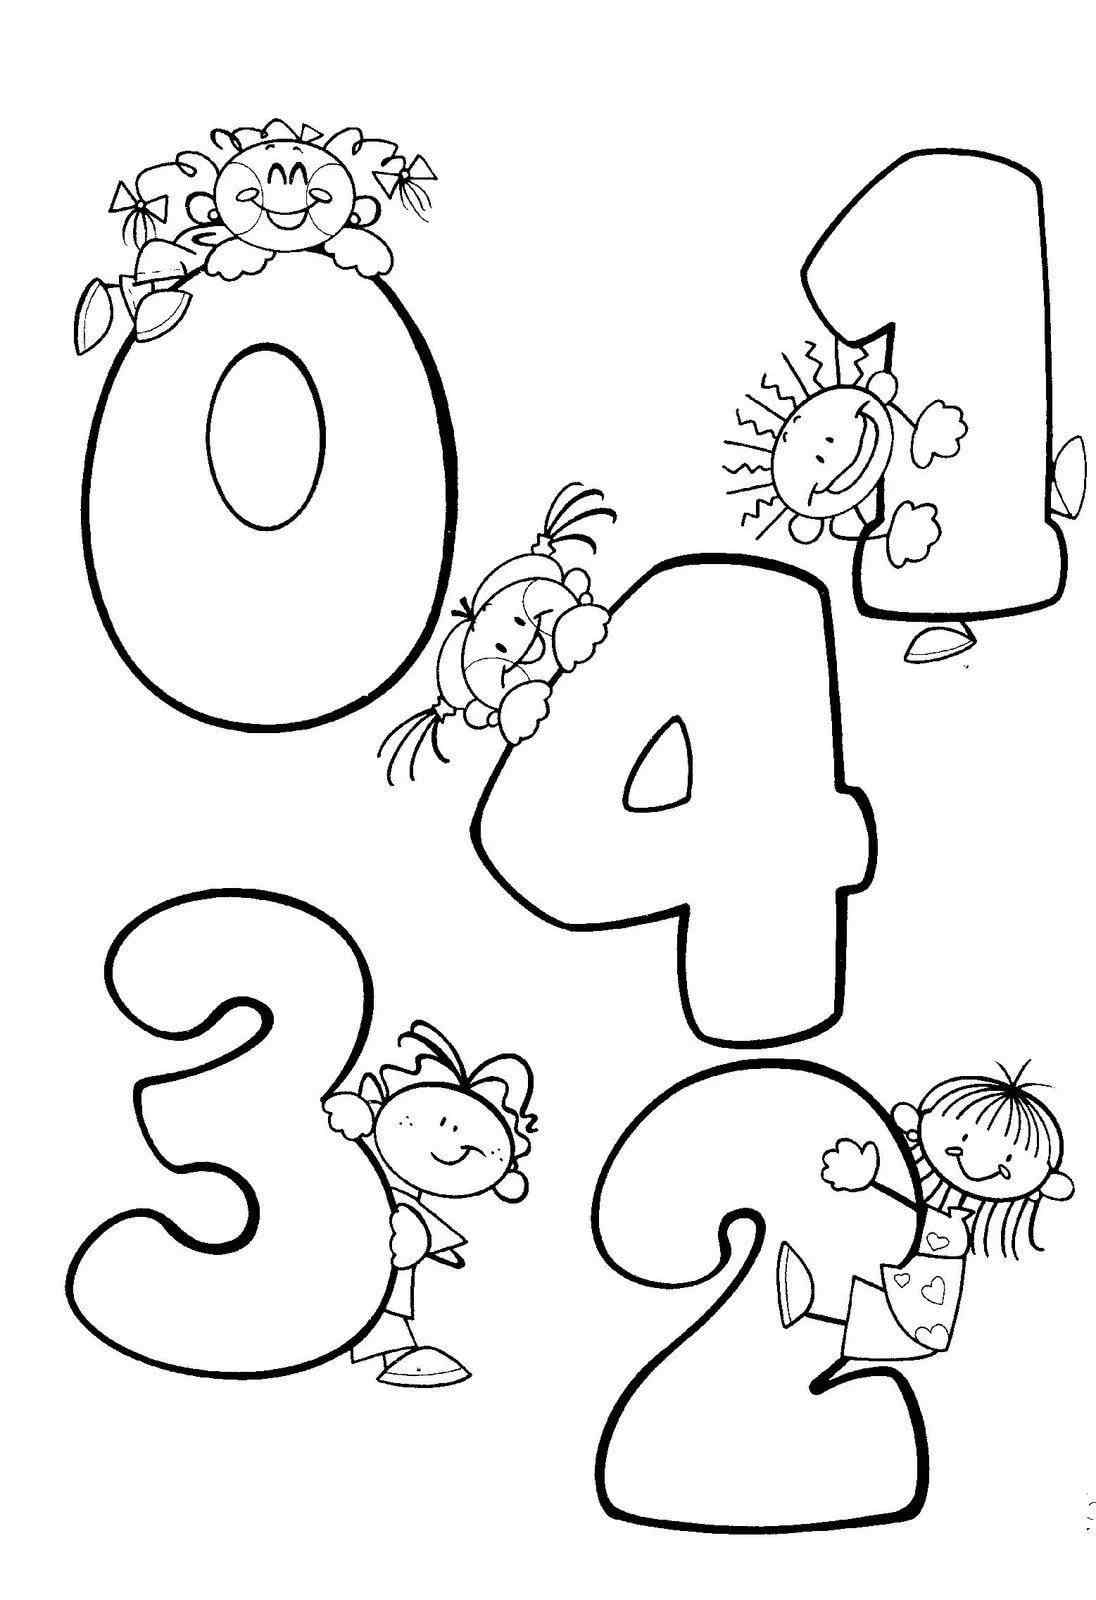 Прикольные рисунки цифр для детей 23